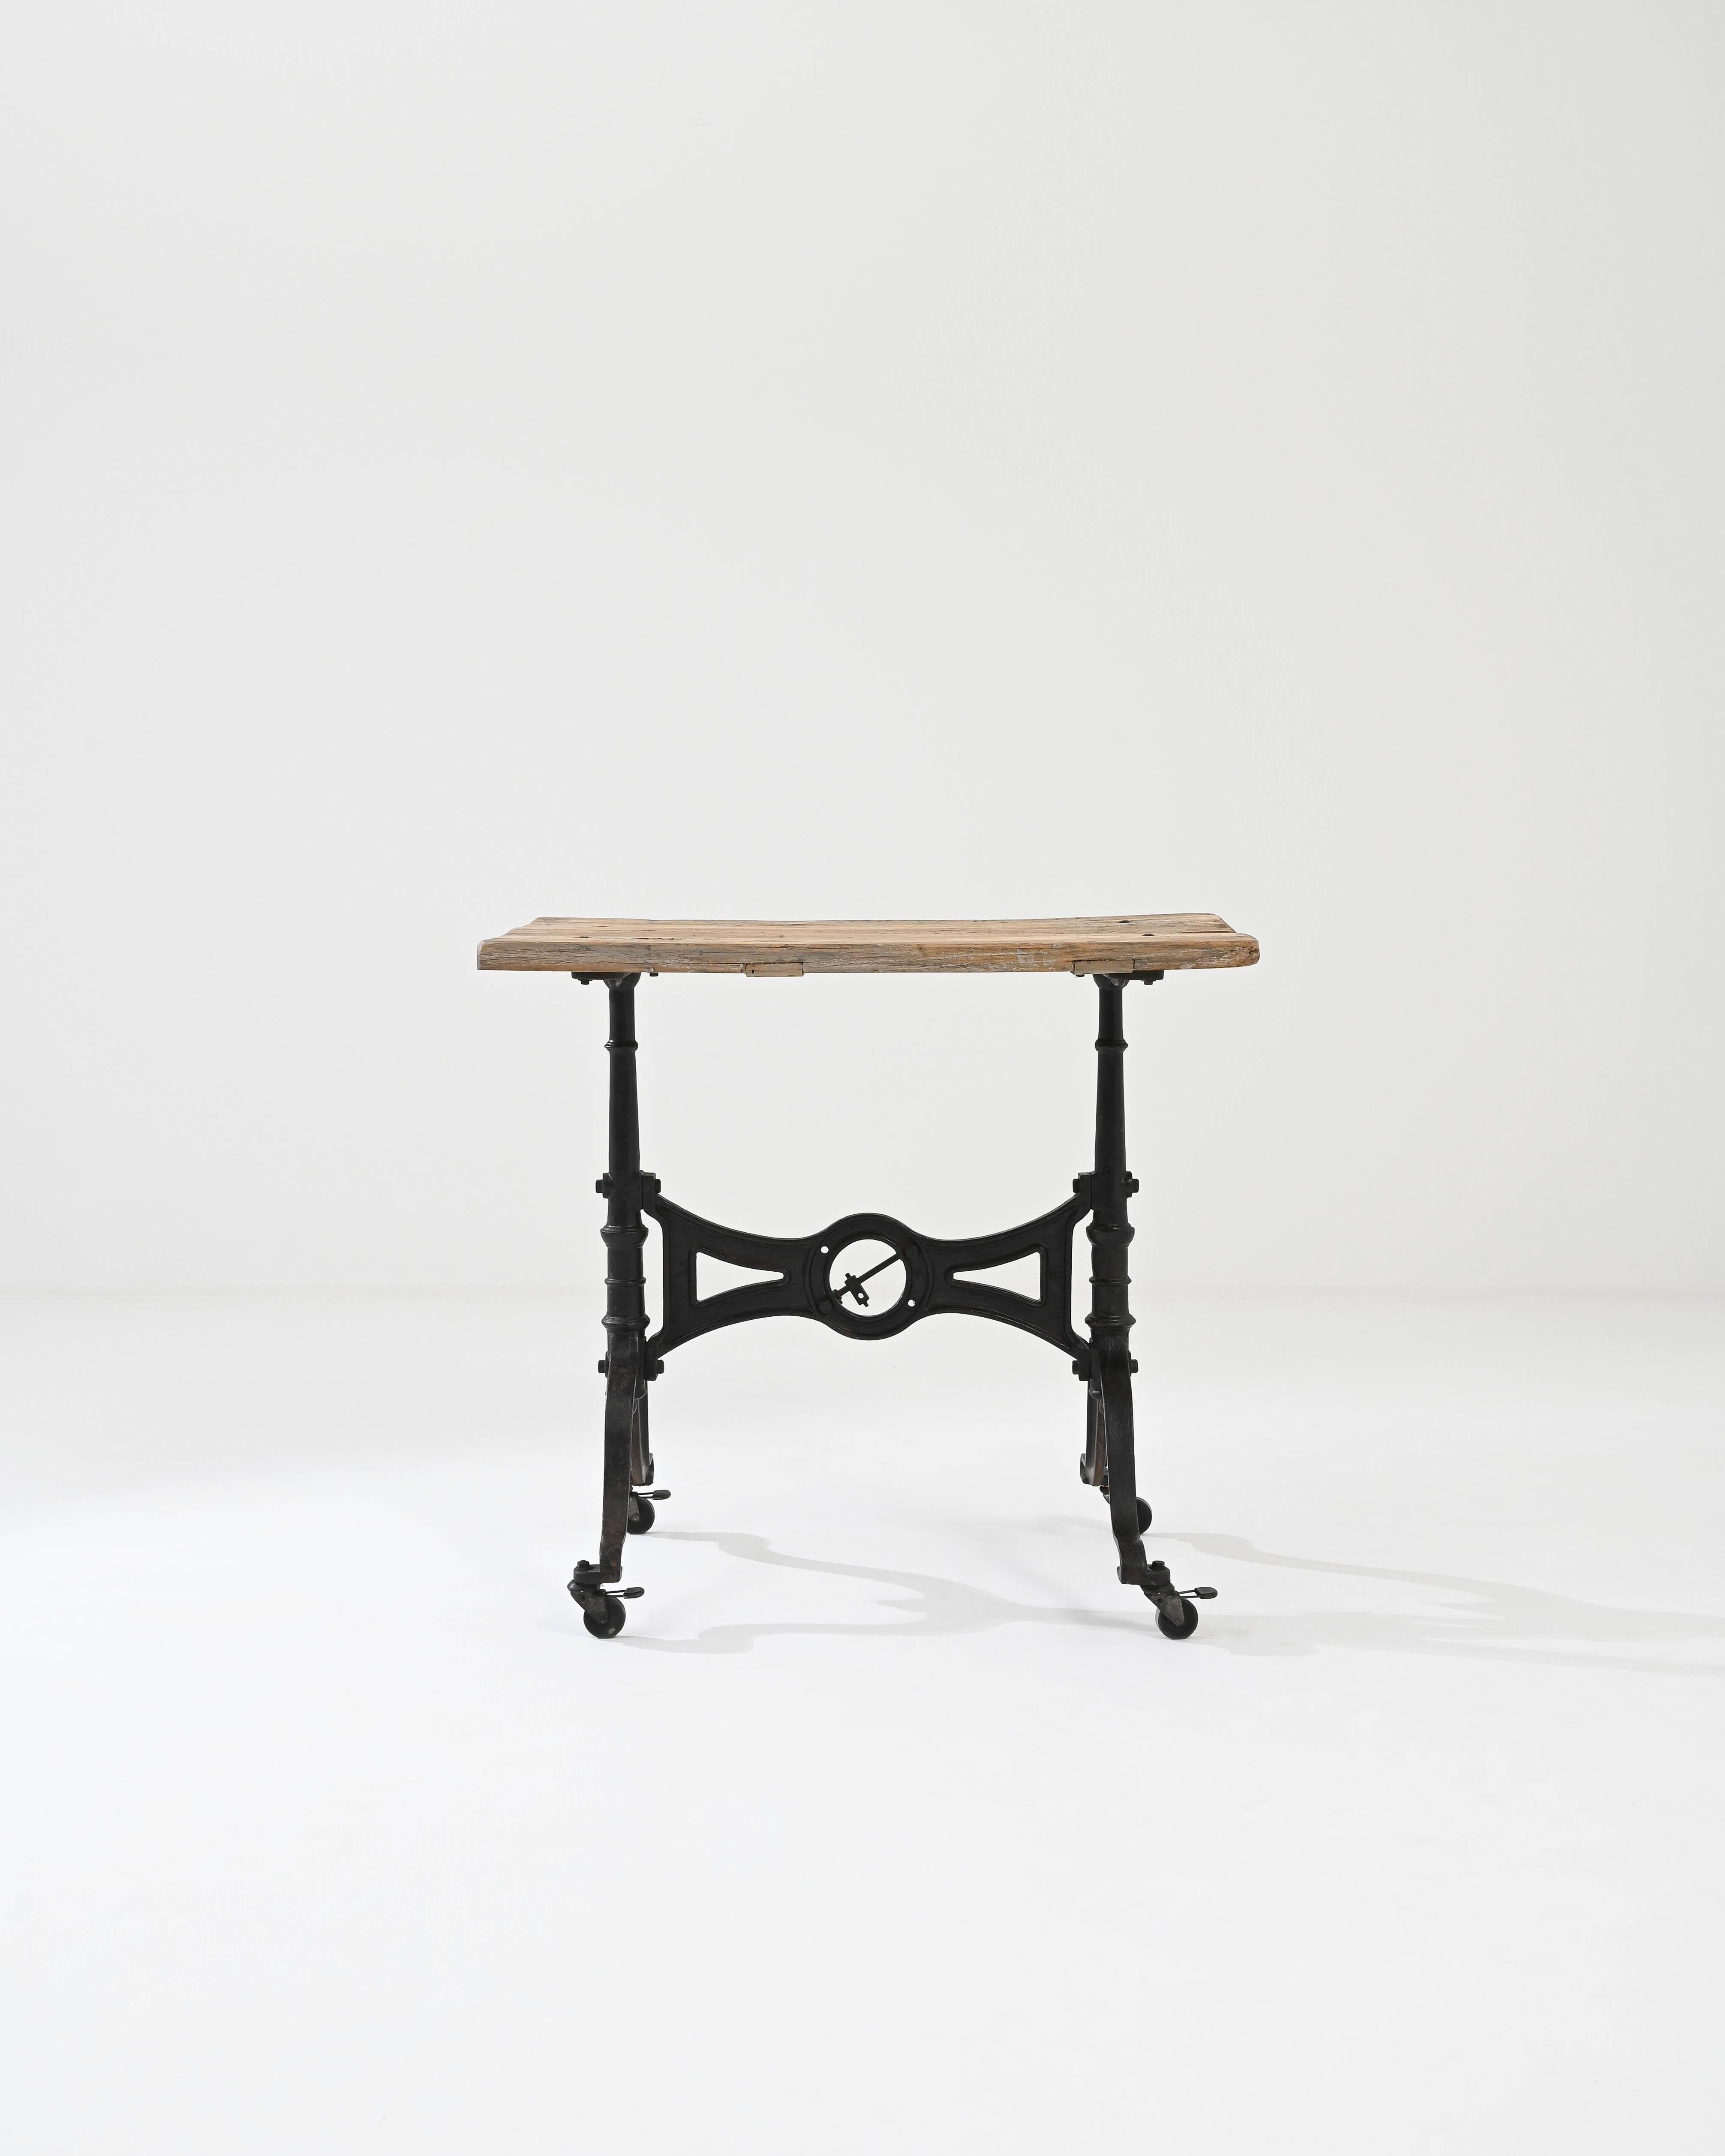 Dieser Bistrotisch ist ein charmantes und eigenwilliges Vintage-Stück. Der um die Jahrhundertwende in Frankreich gefertigte Metallrahmen sorgt für eine markante Silhouette: Die kühnen Kurven und die raffinierten, aus Metall geschmiedeten Symmetrien